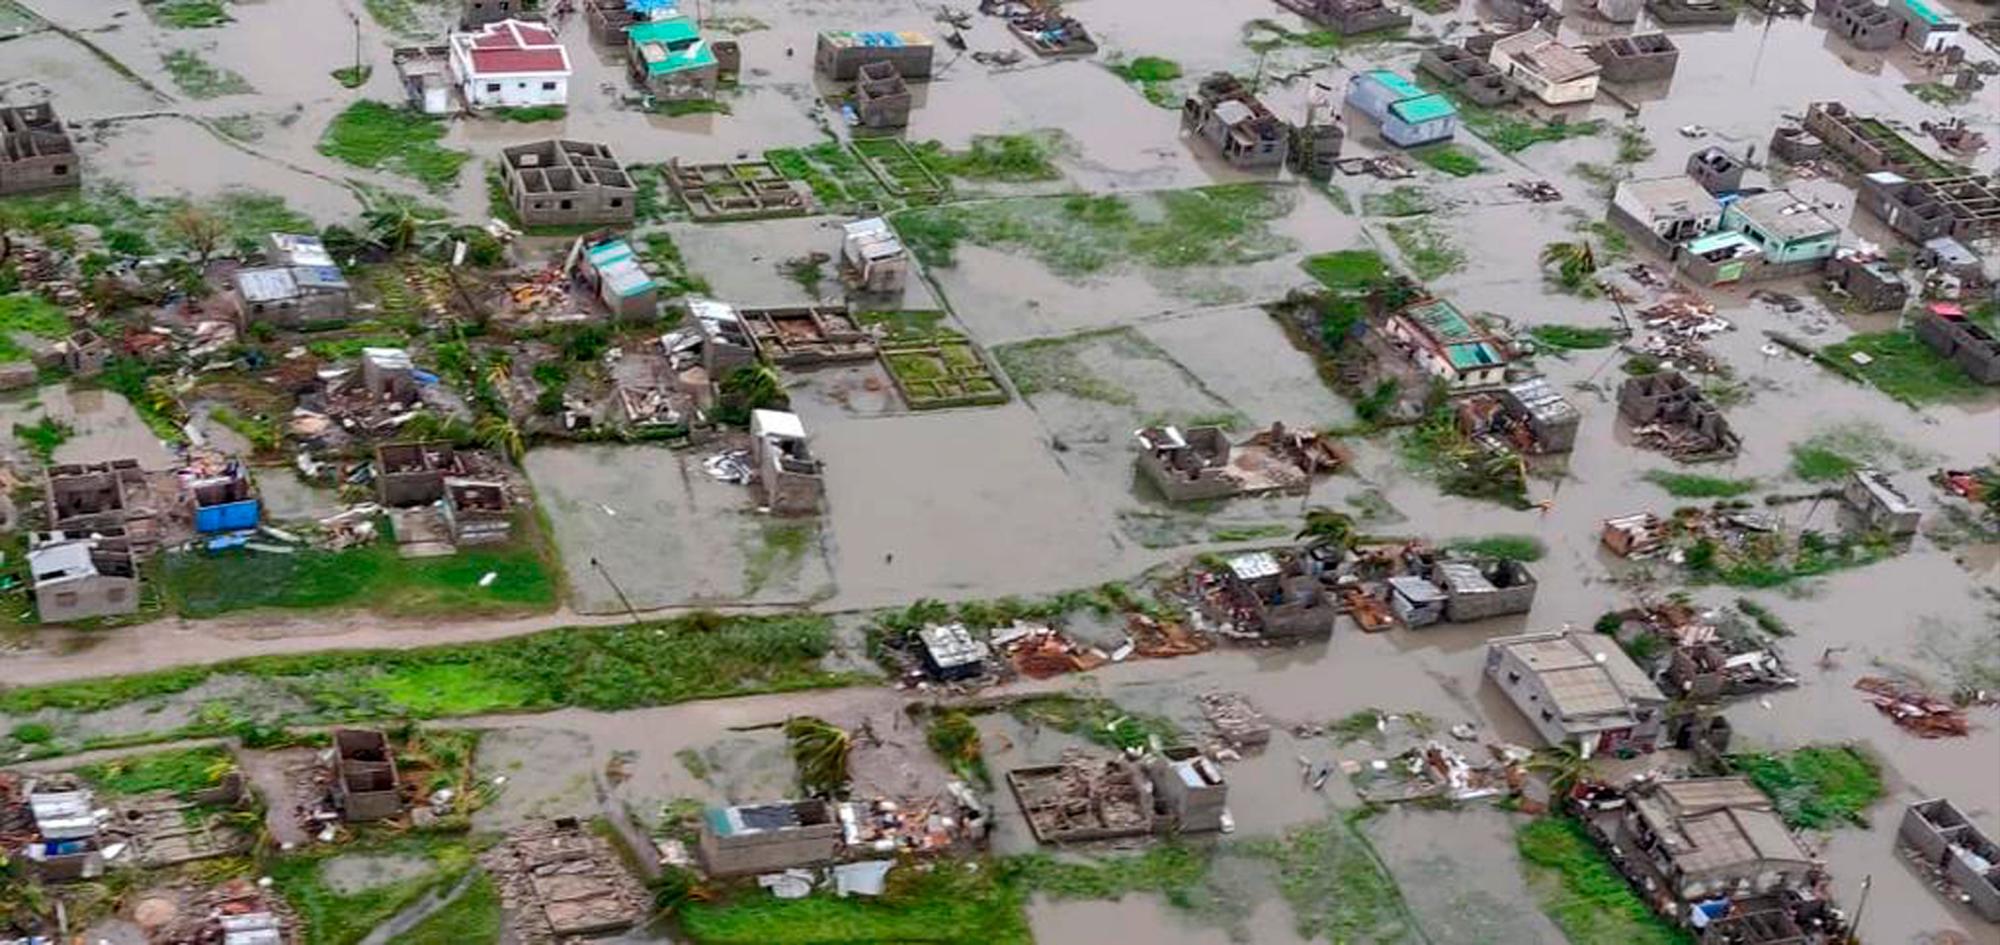 Vista aérea de las consecuencias del ciclón en la ciudad de Beira, Mozambique. (Foto entregada por la Federación Internacional de la Cruz Roja y Media Luna Roja, el lunes 18 de marzo del 2019.